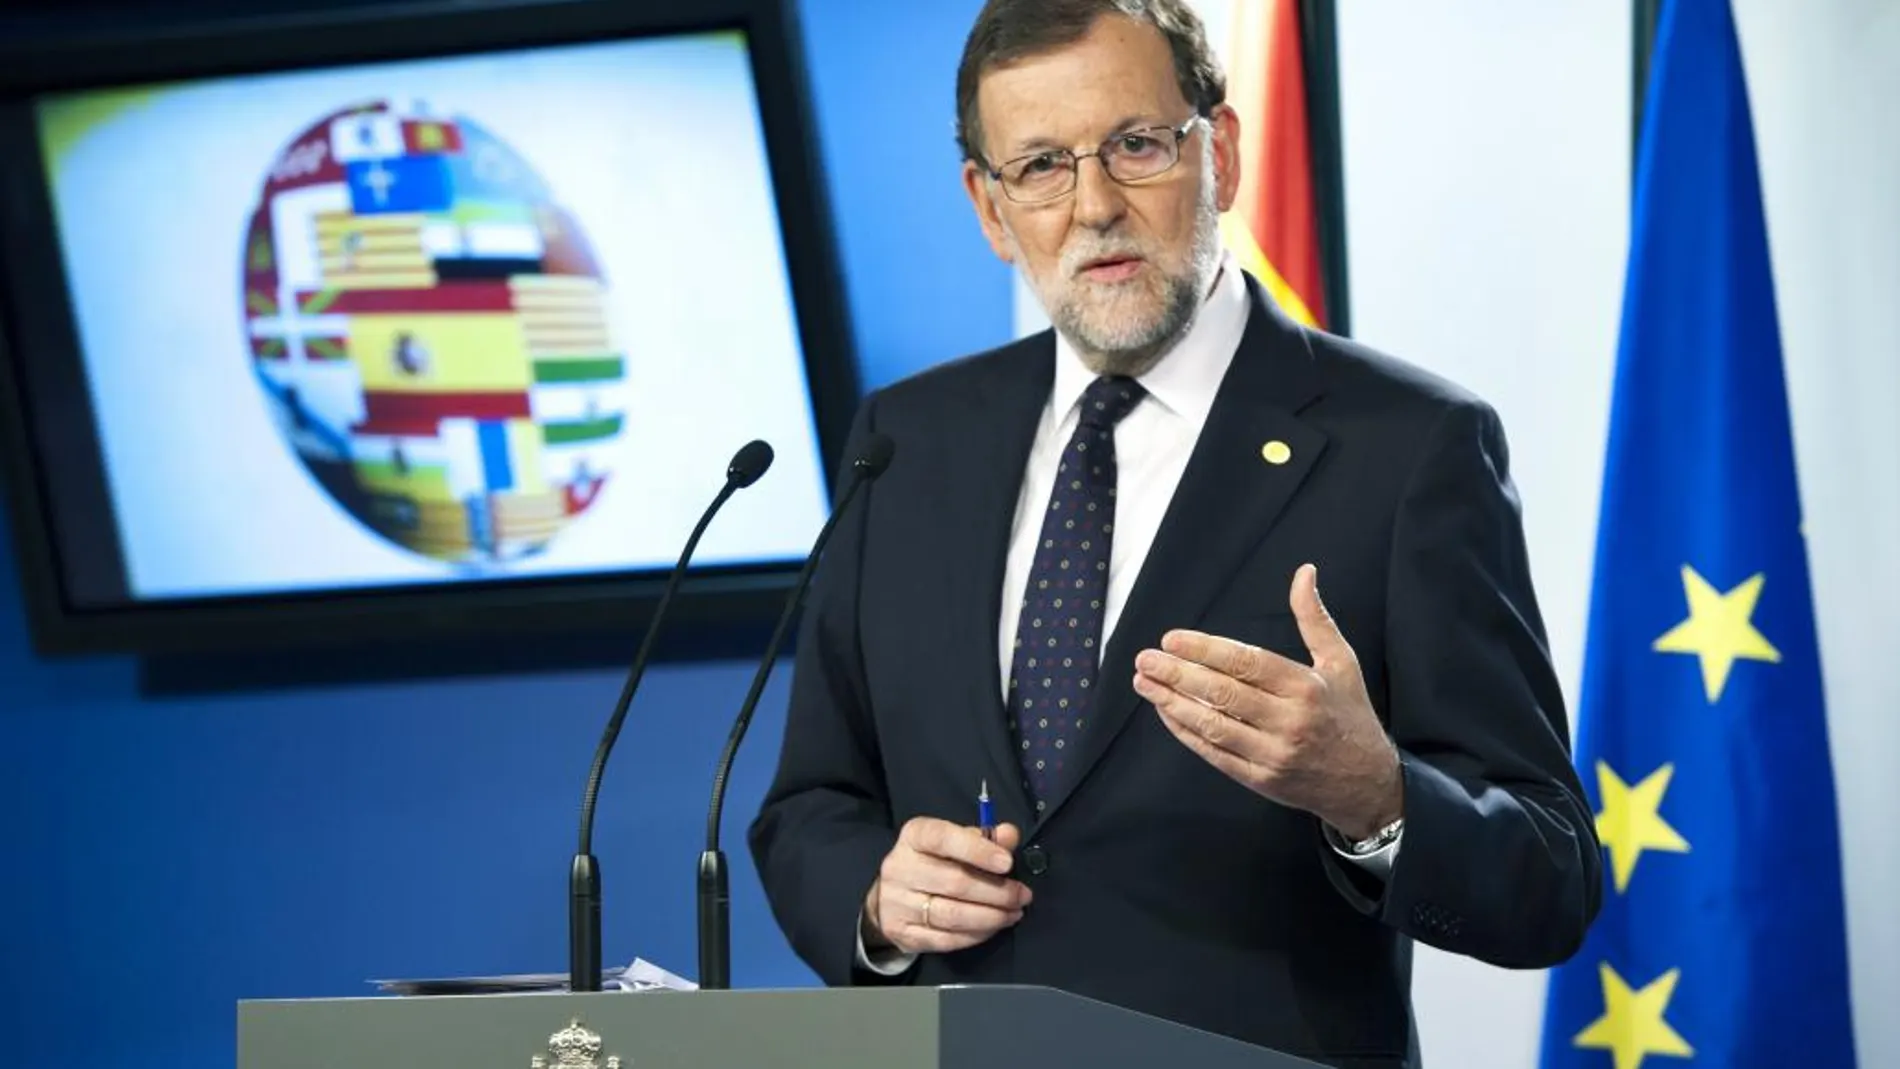 El presidente del Gobierno español en funciones, Mariano Rajoy, durante la rueda de prensa tras la reunión del Consejo Europeo celebrado en Bruselas